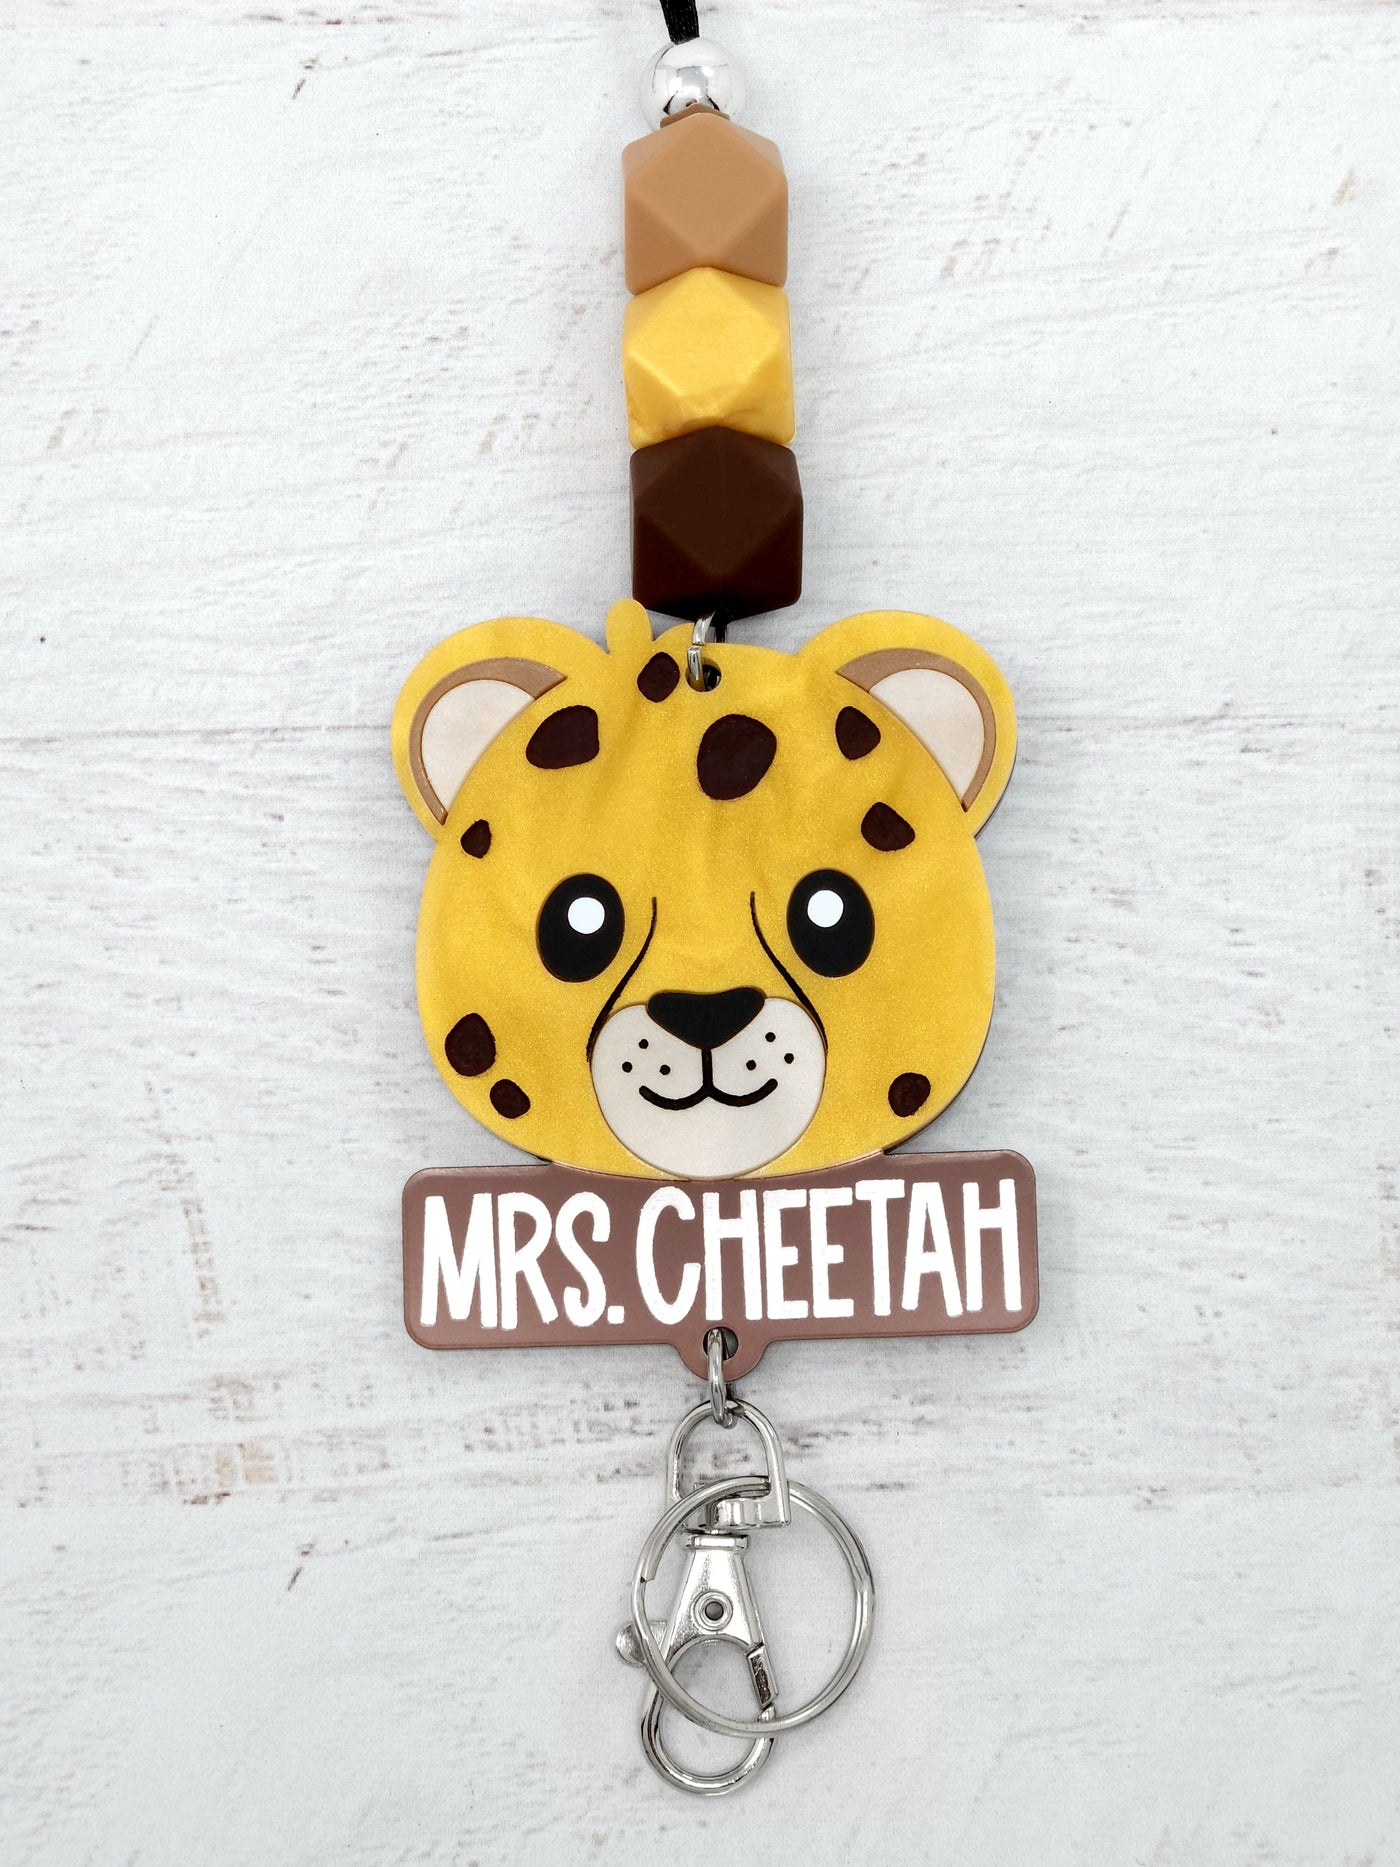 Personalized Acrylic Cheetah Lanyard